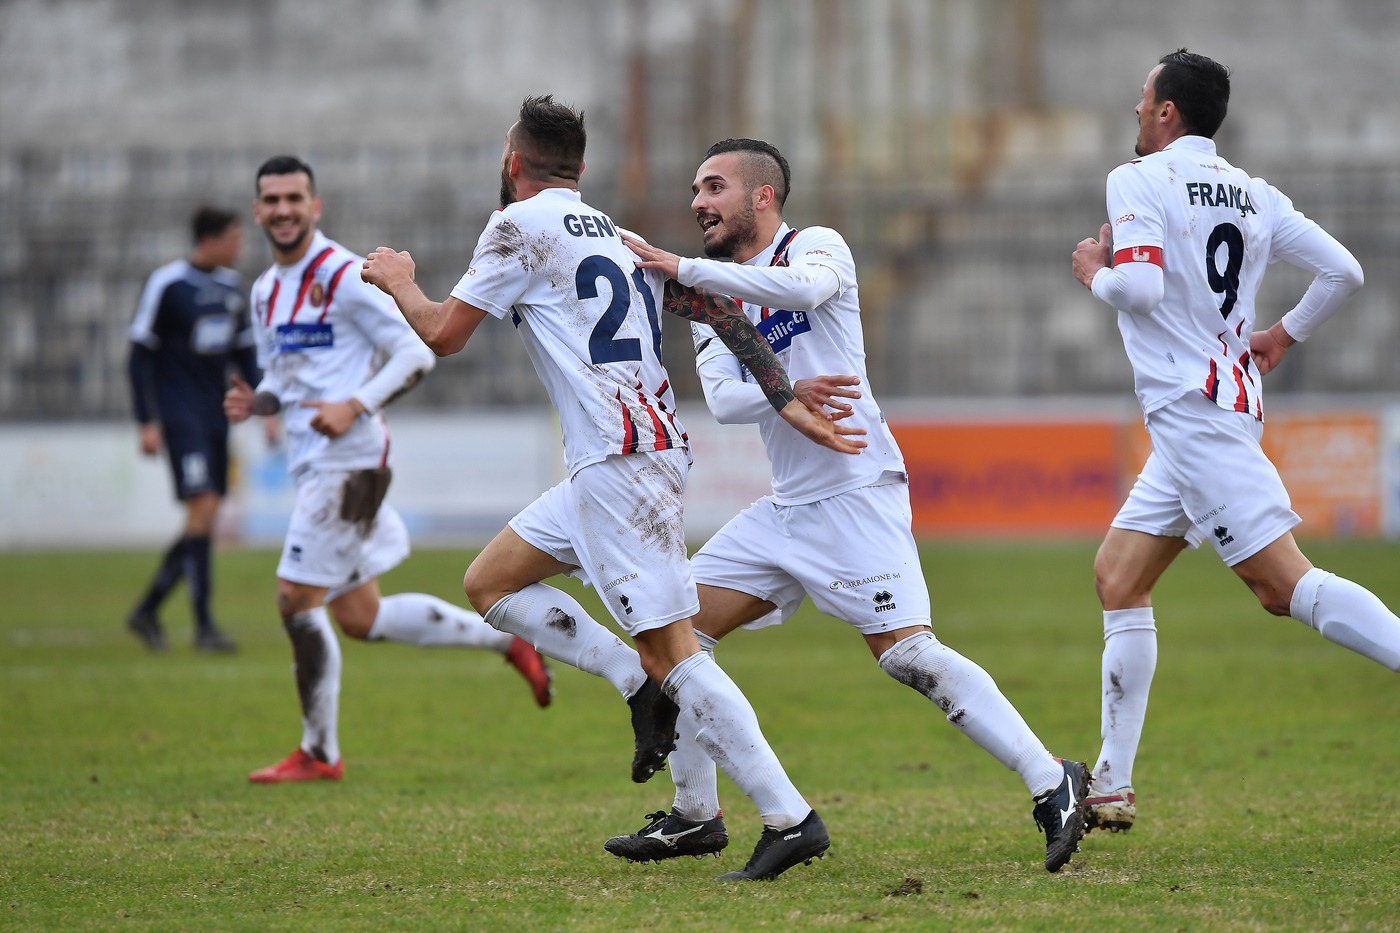 Potenza-Rende 12 maggio: si gioca il primo turno dei play-off di Serie C. I padroni di casa sono favoriti per la qualificazione.